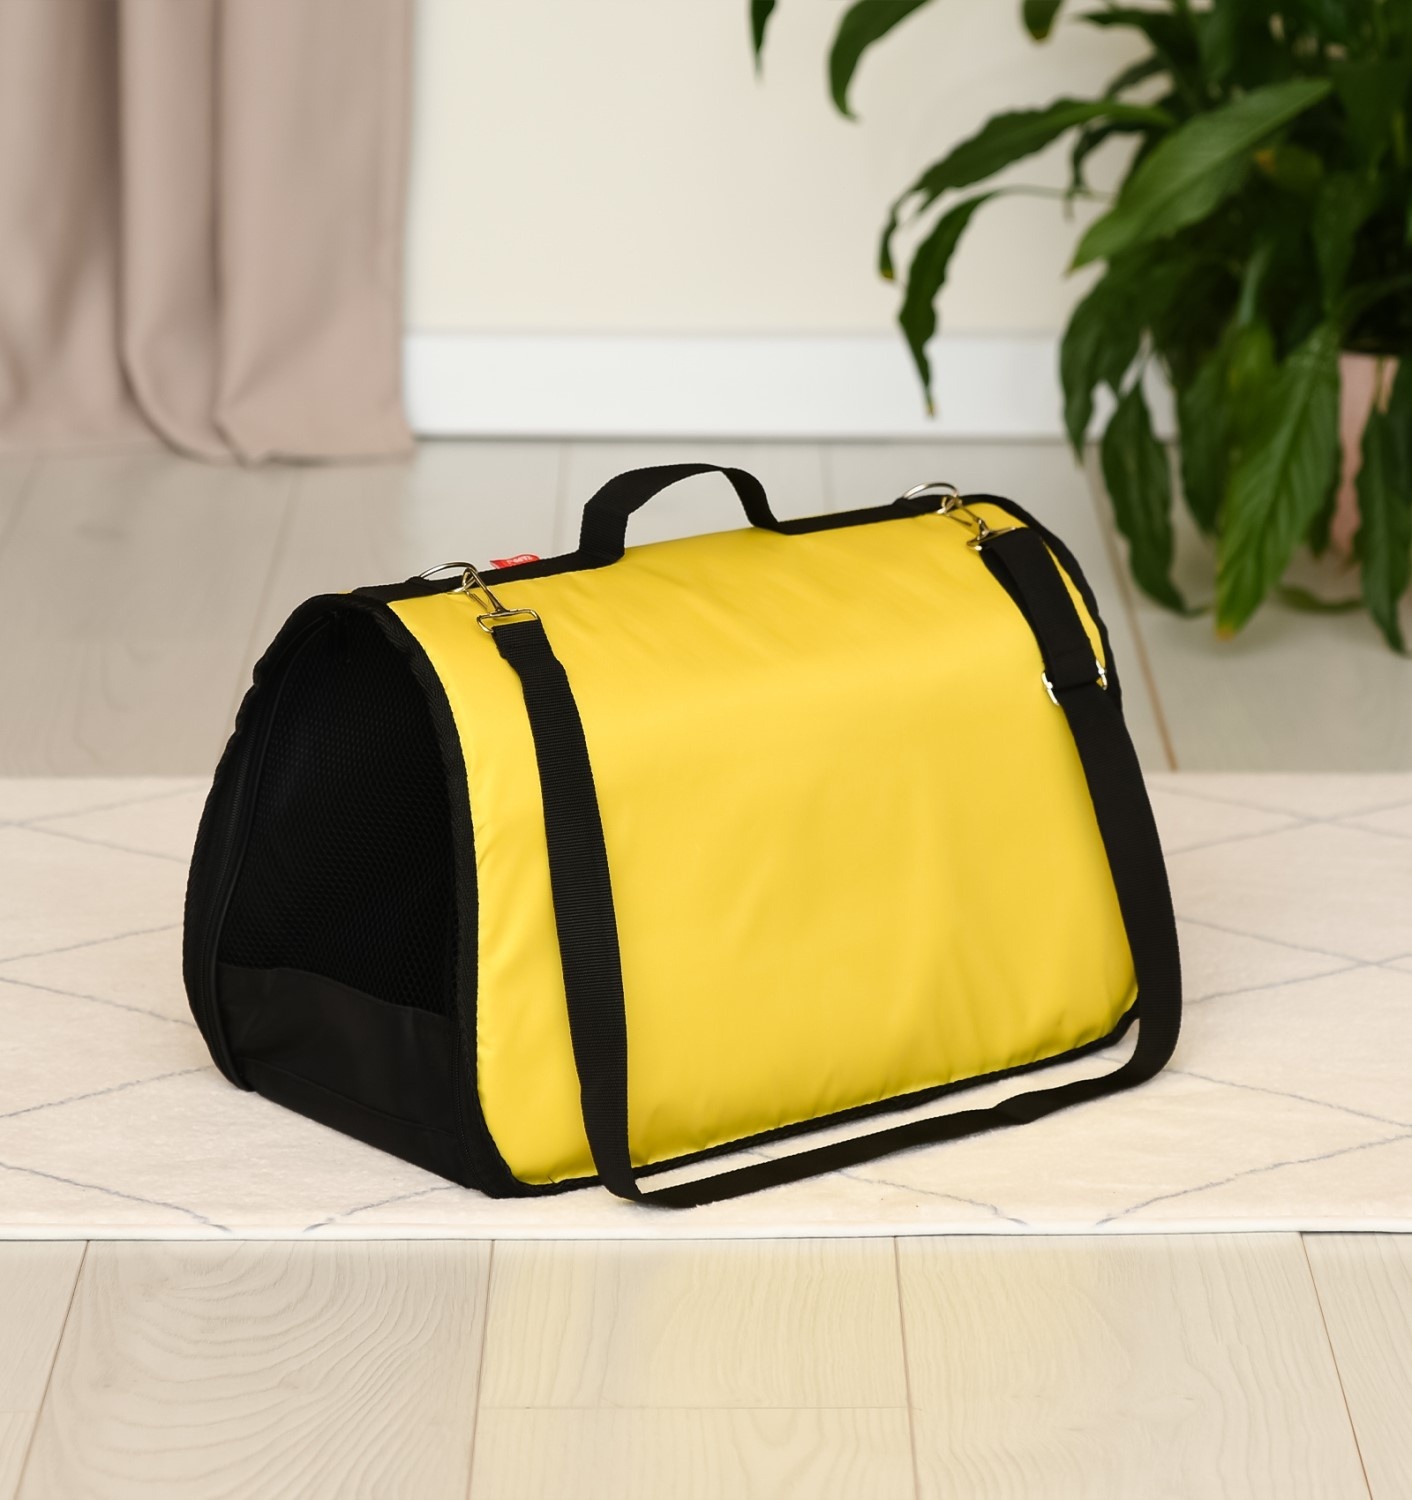 Tappi транспортировка Tappi транспортировка сумка-переноска для животных, желтая (43х29х27 см)